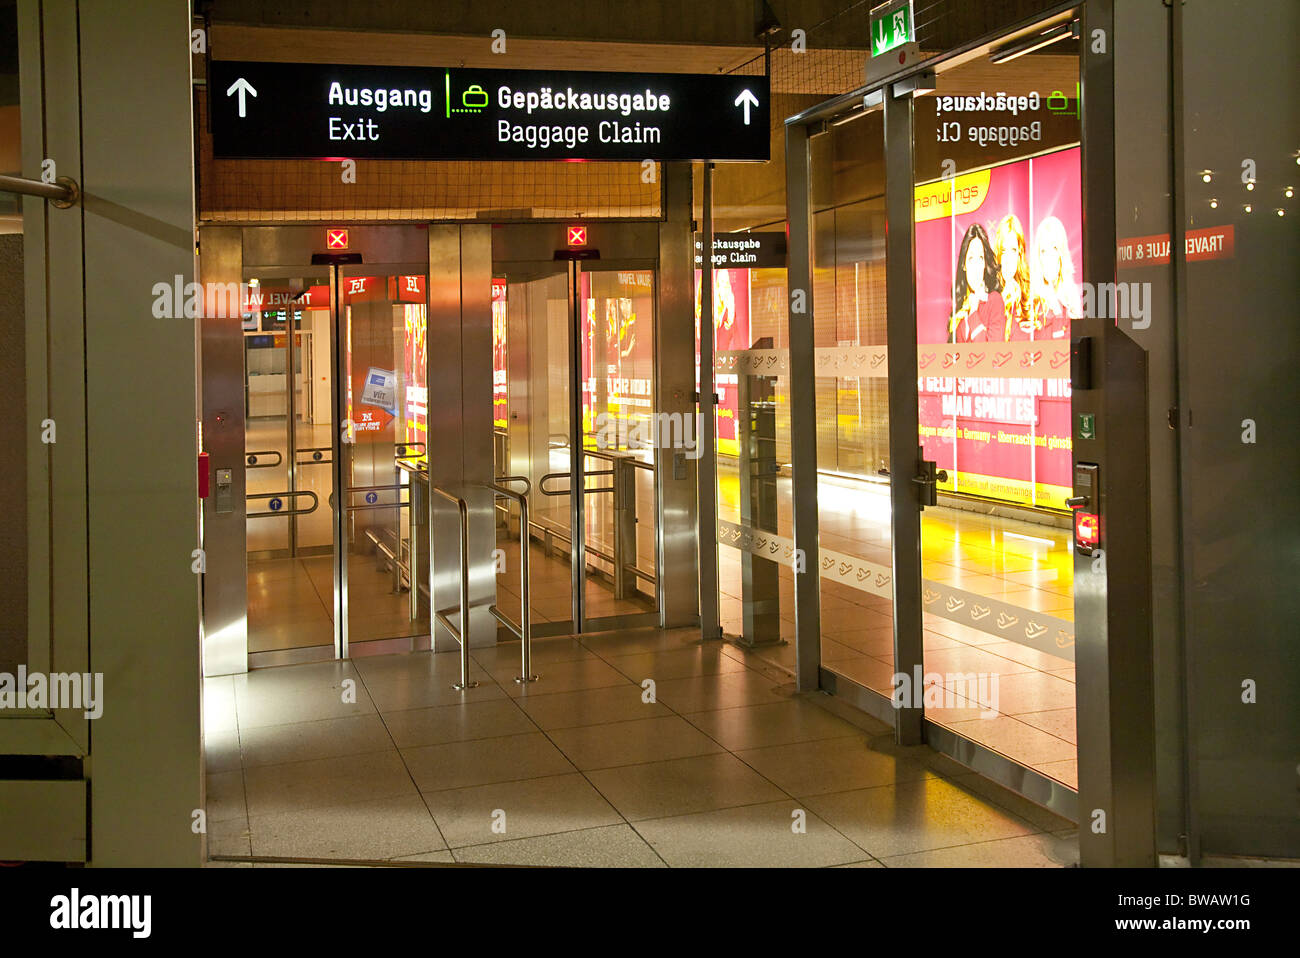 Gepäckausgabe am Flughafen Köln-Bonn Tore Stockfotografie - Alamy